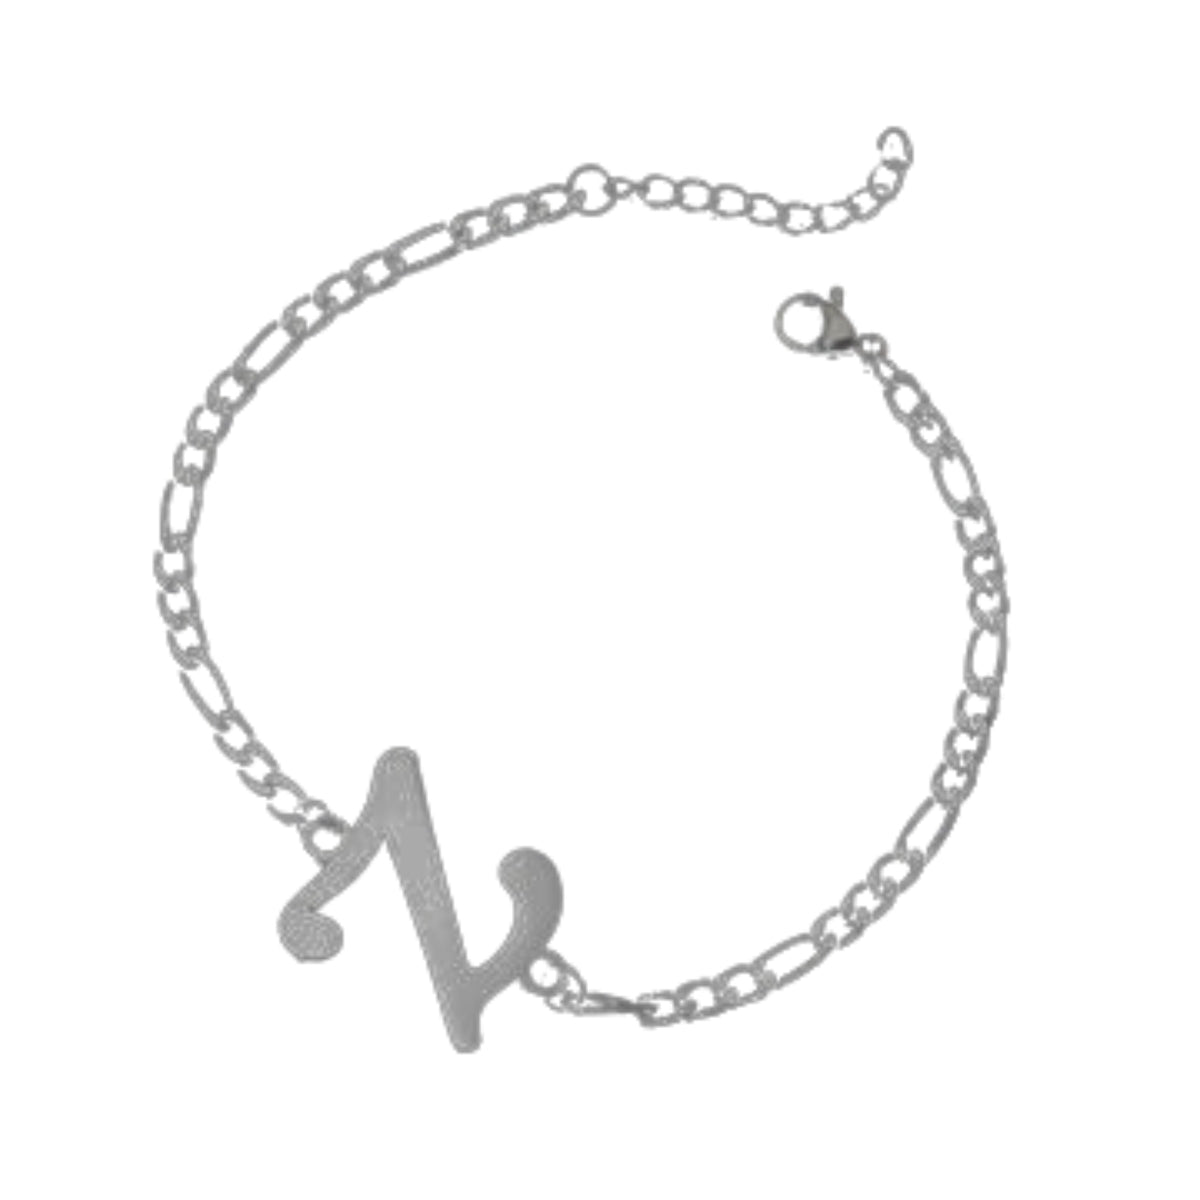 Γυναικείο ατσάλινο βραχιόλι με αρχικό γράμμα Ζ χρώμα ασημί ρυθμιζόμενο (B1215)  - bracelet - charmy.gr